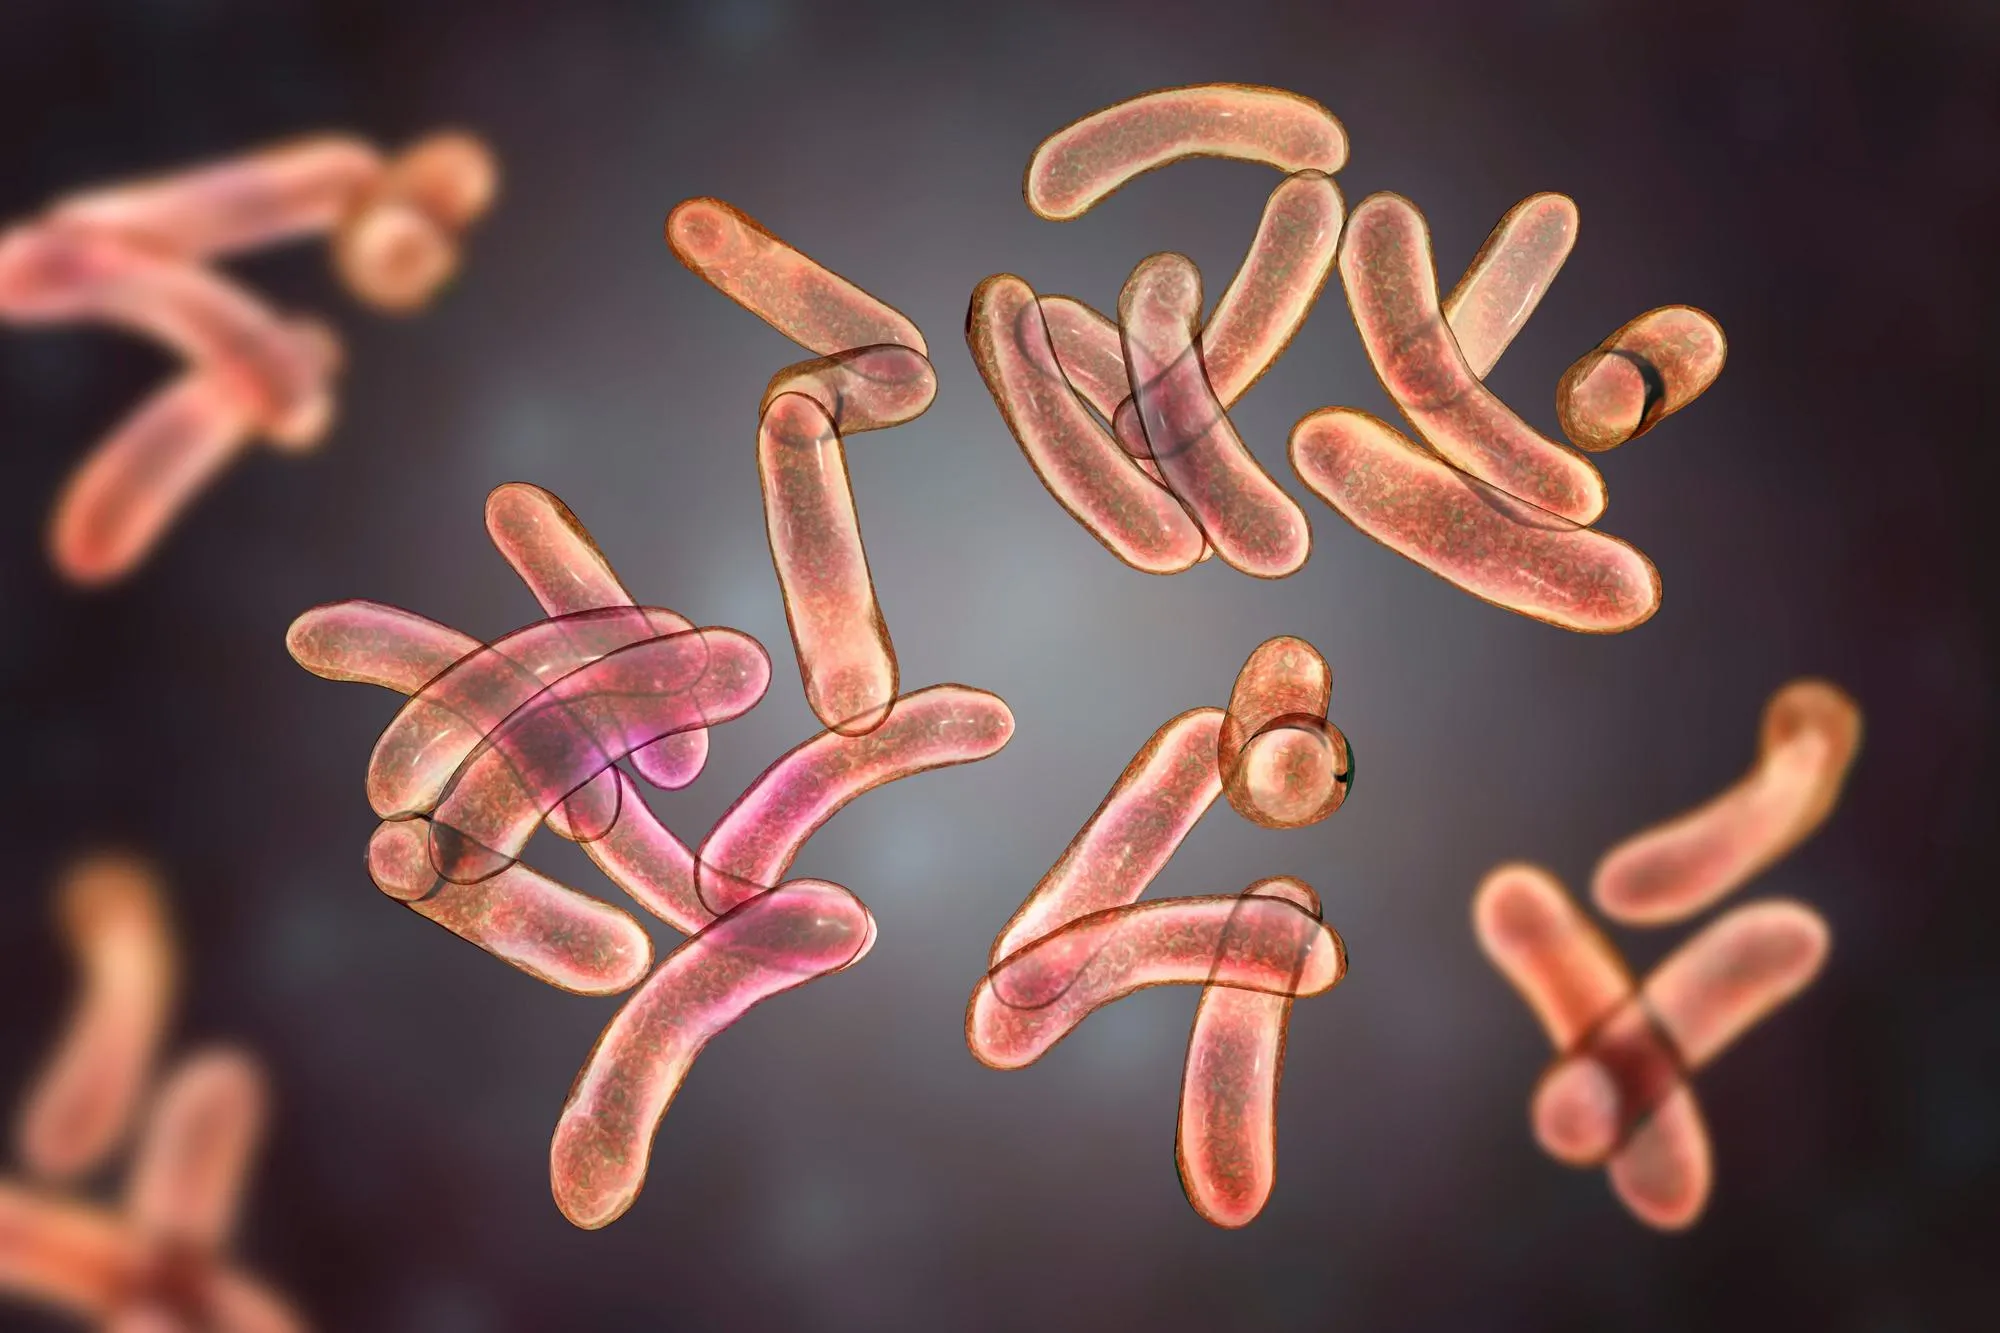 Photographie de bactéries responsables du choléra